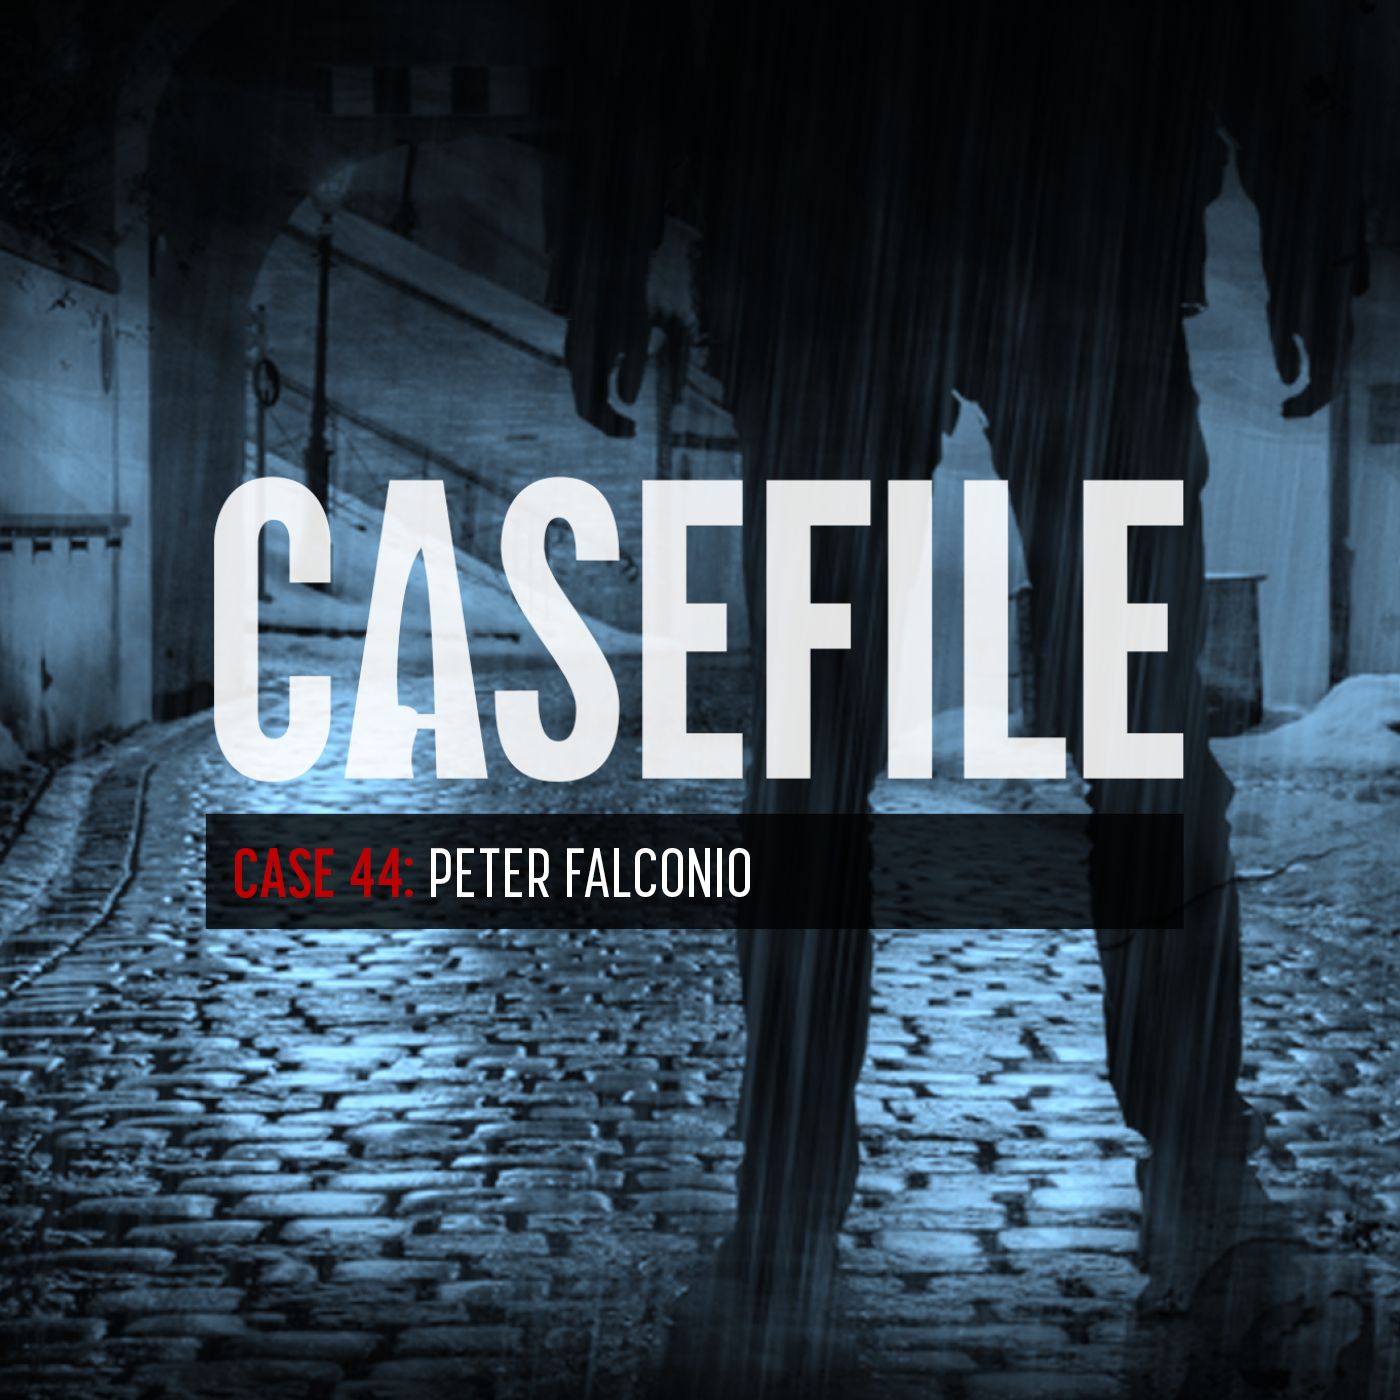 Case 44: Peter Falconio